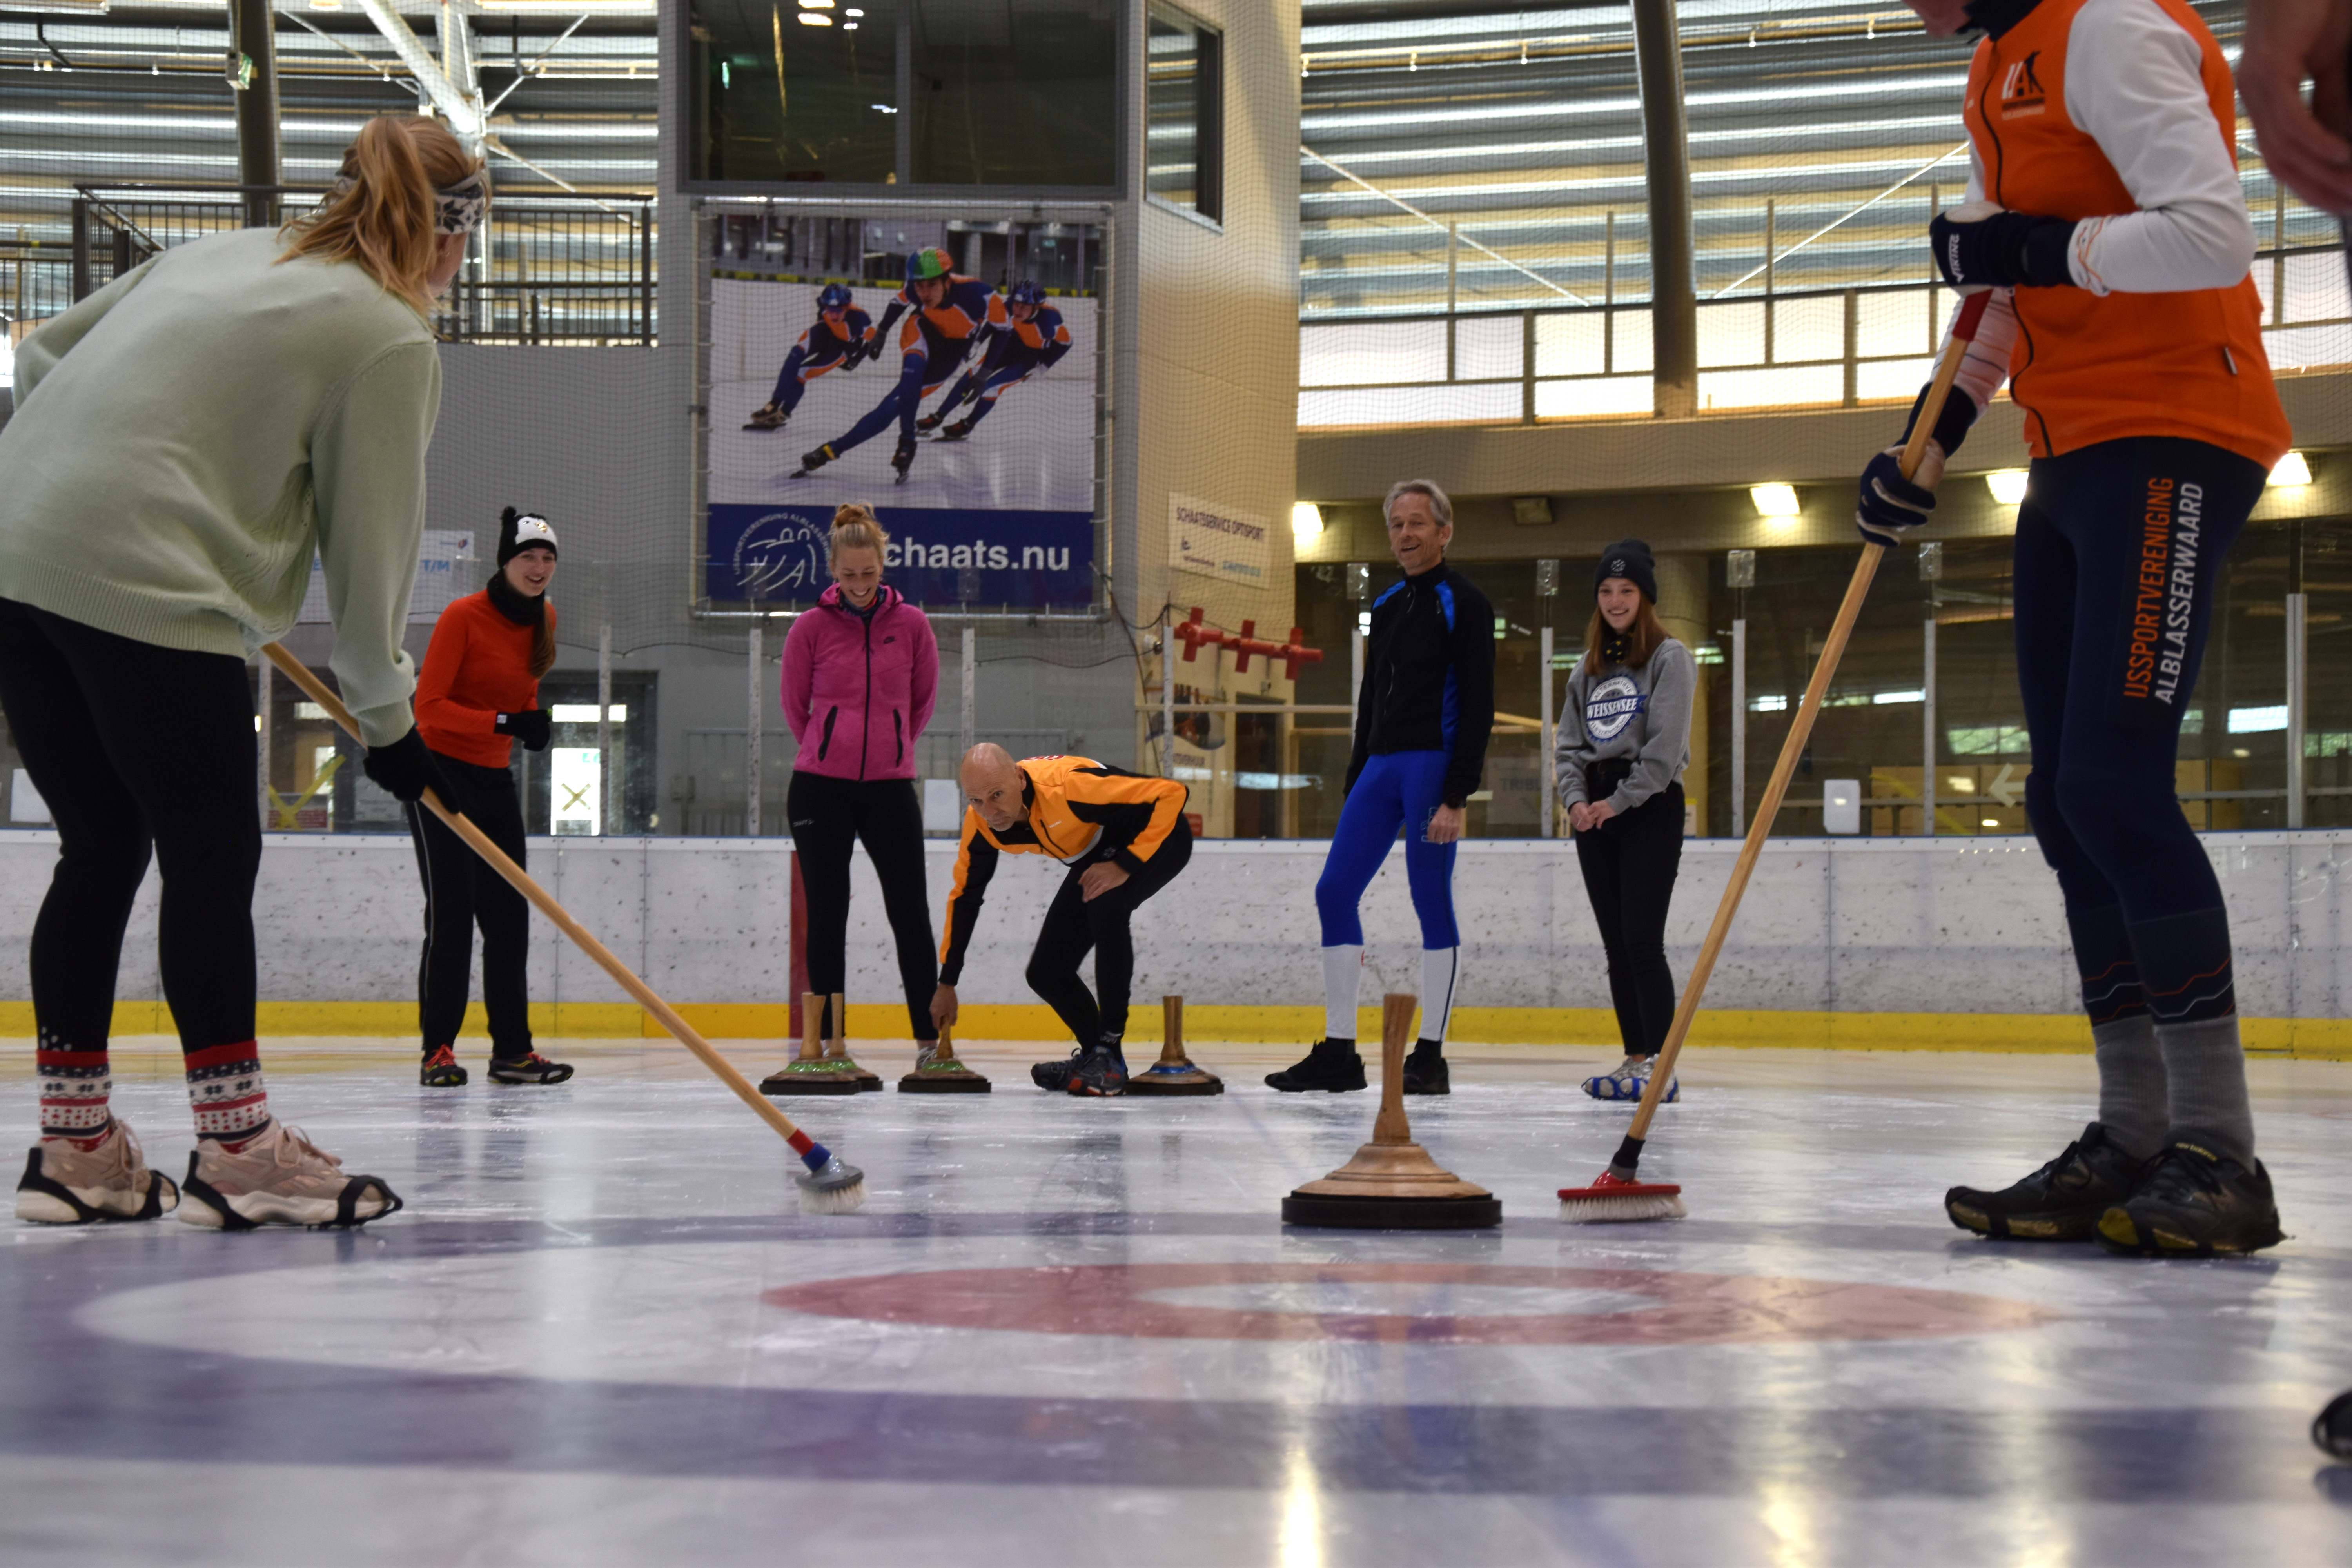 Zeven mensen op het ijs zijn bezig met een potje curling 